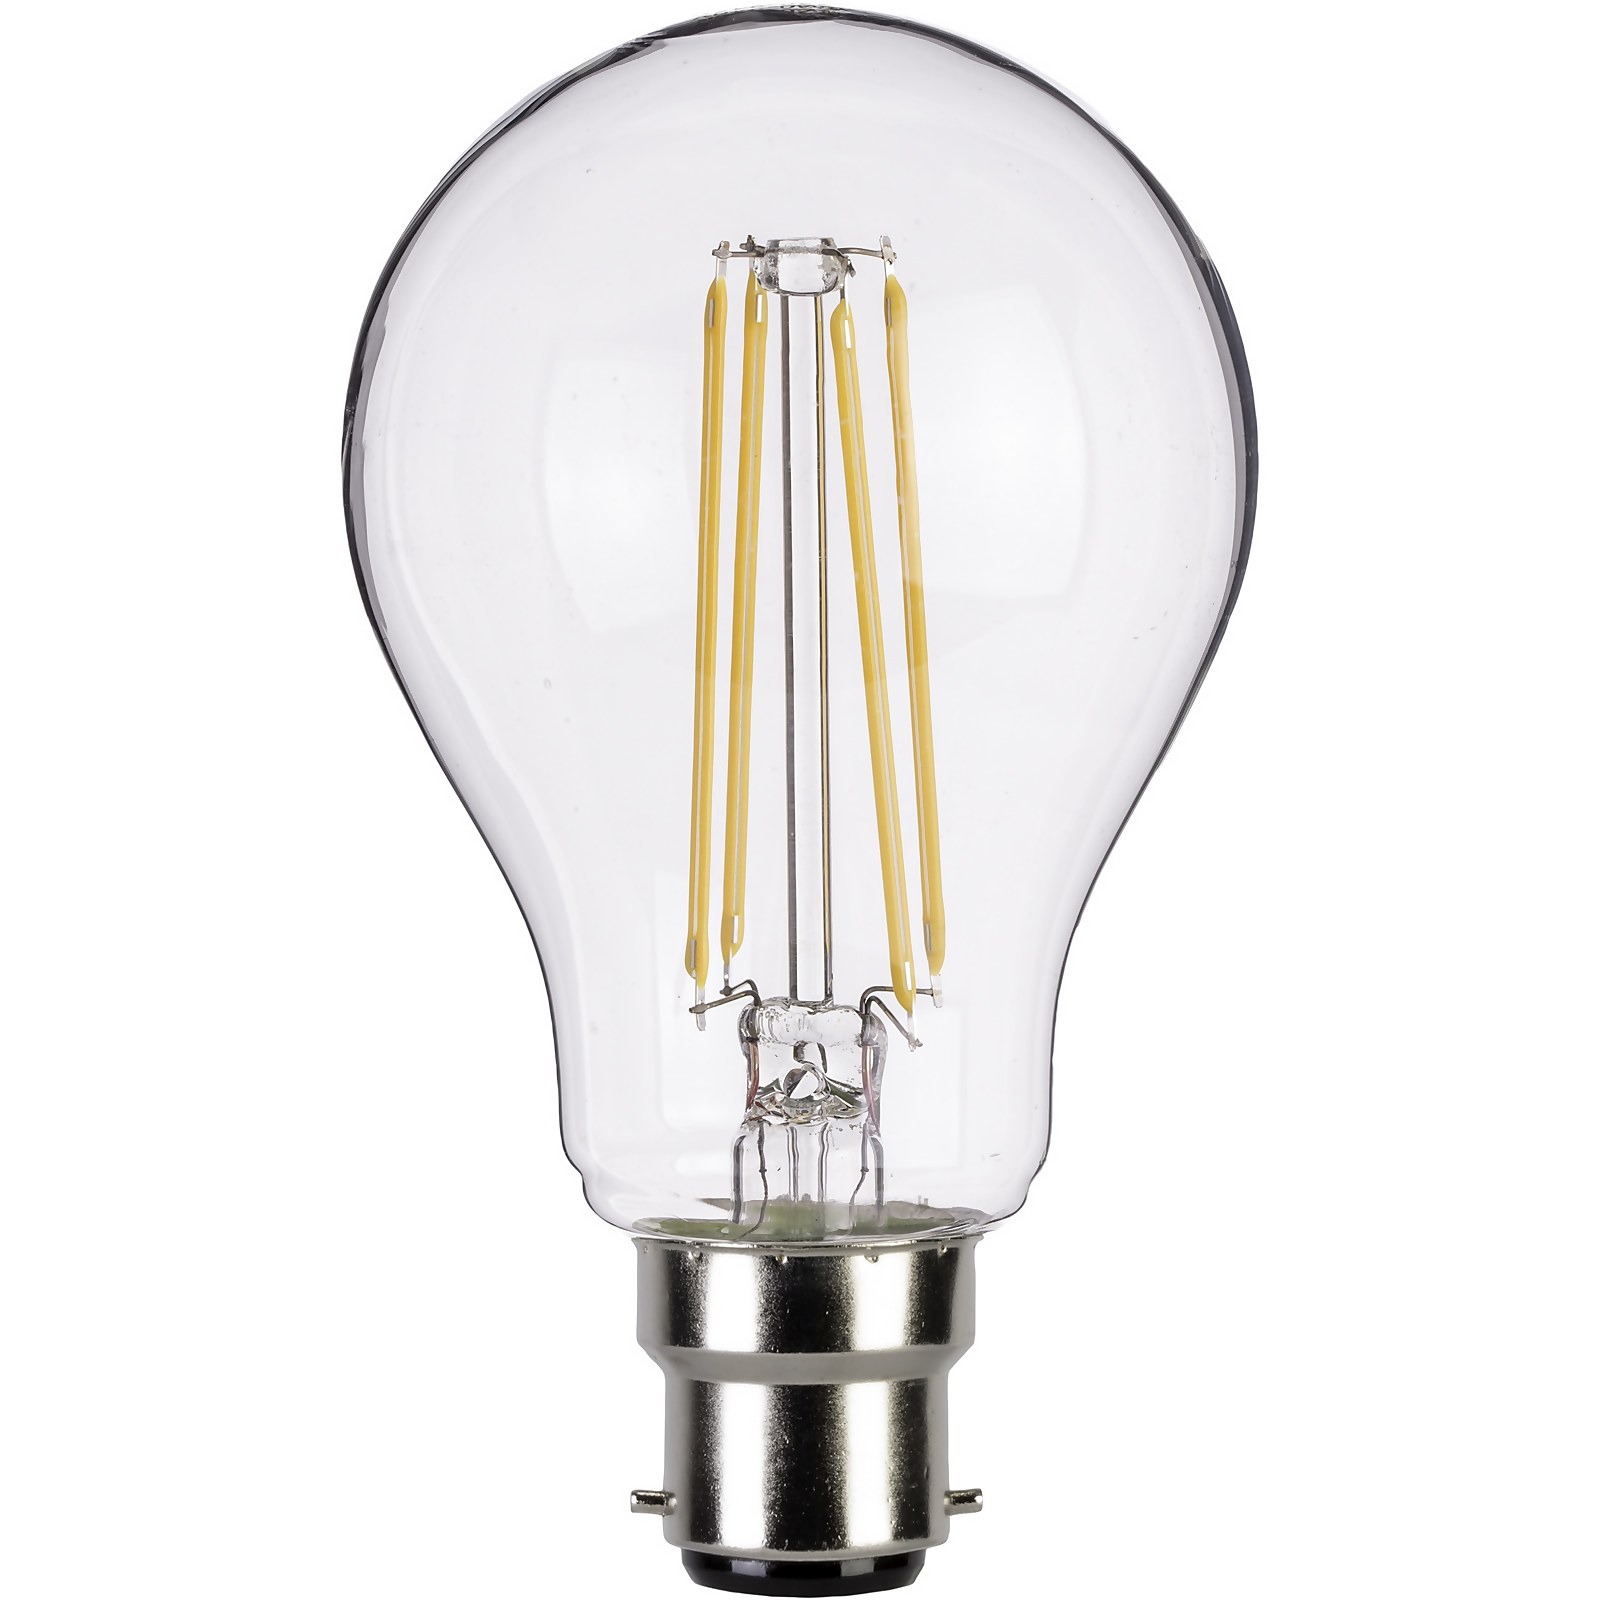 Photo of Led Filament A-lamp 4w B22 Clear Light Bulb